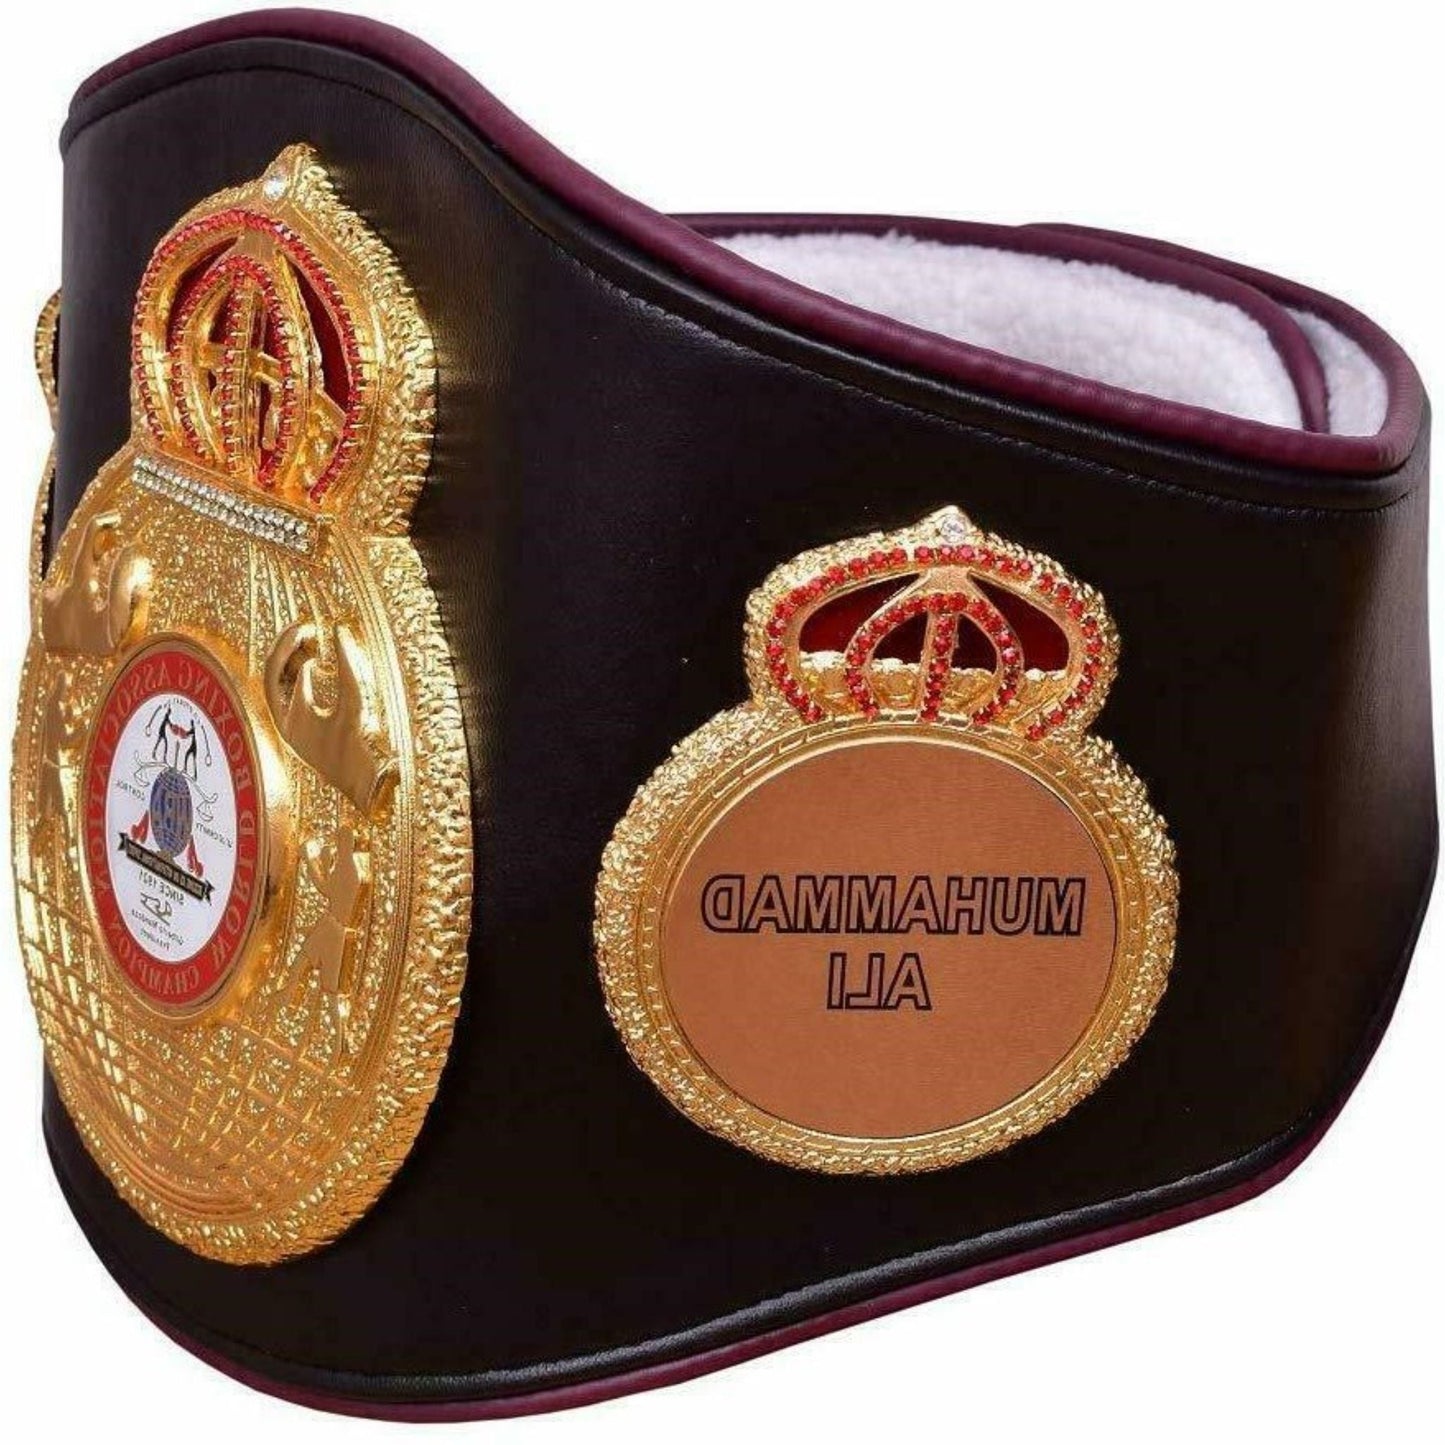 WBA (World Boxing Association) Boxing Championship Replica Belt Adult size